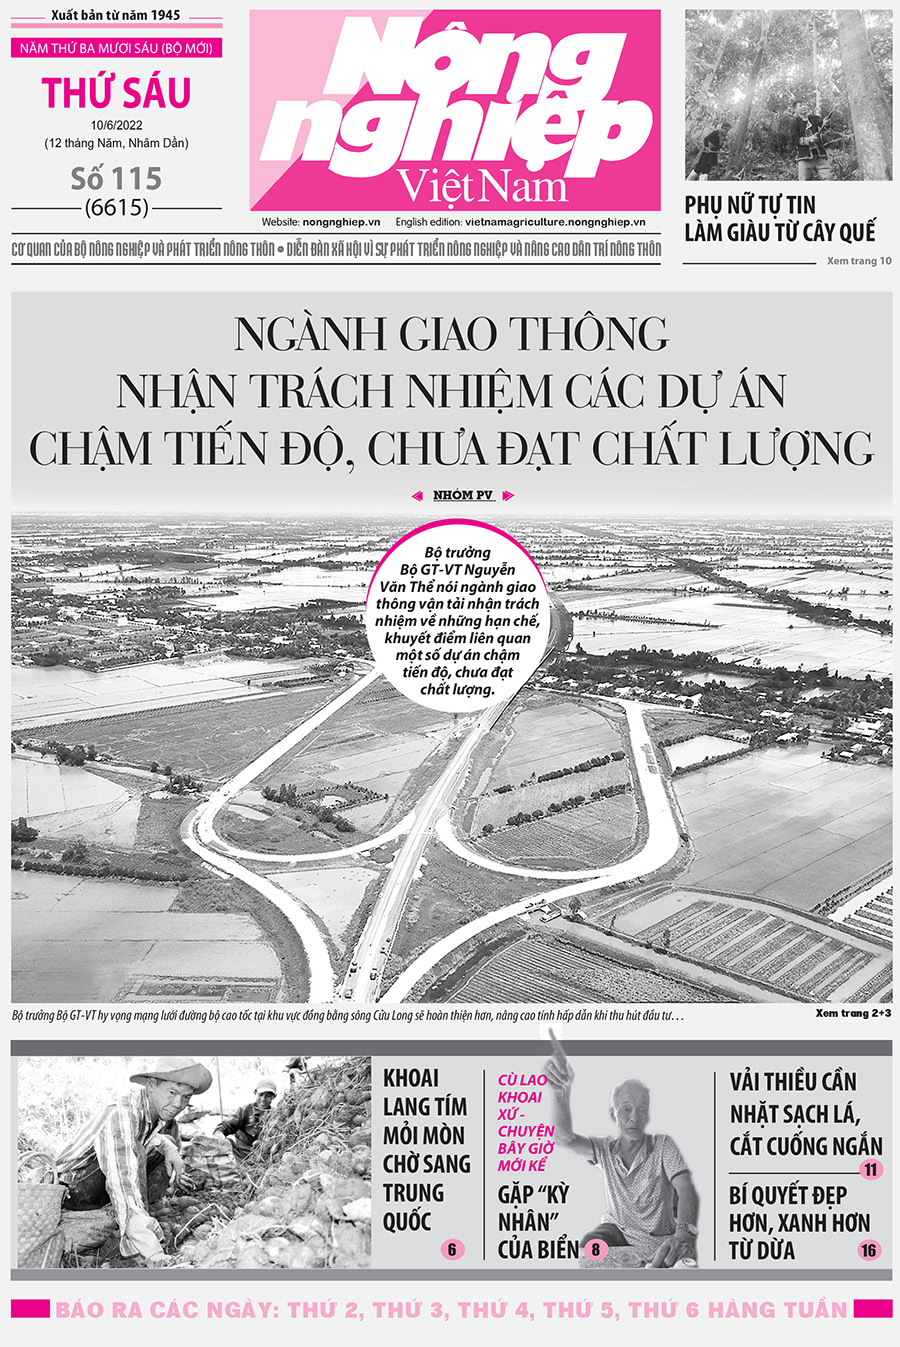 Tổng hợp tin tức báo giấy trên Báo Nông nghiệp Việt Nam số 115 ra ngày 10/6/2022